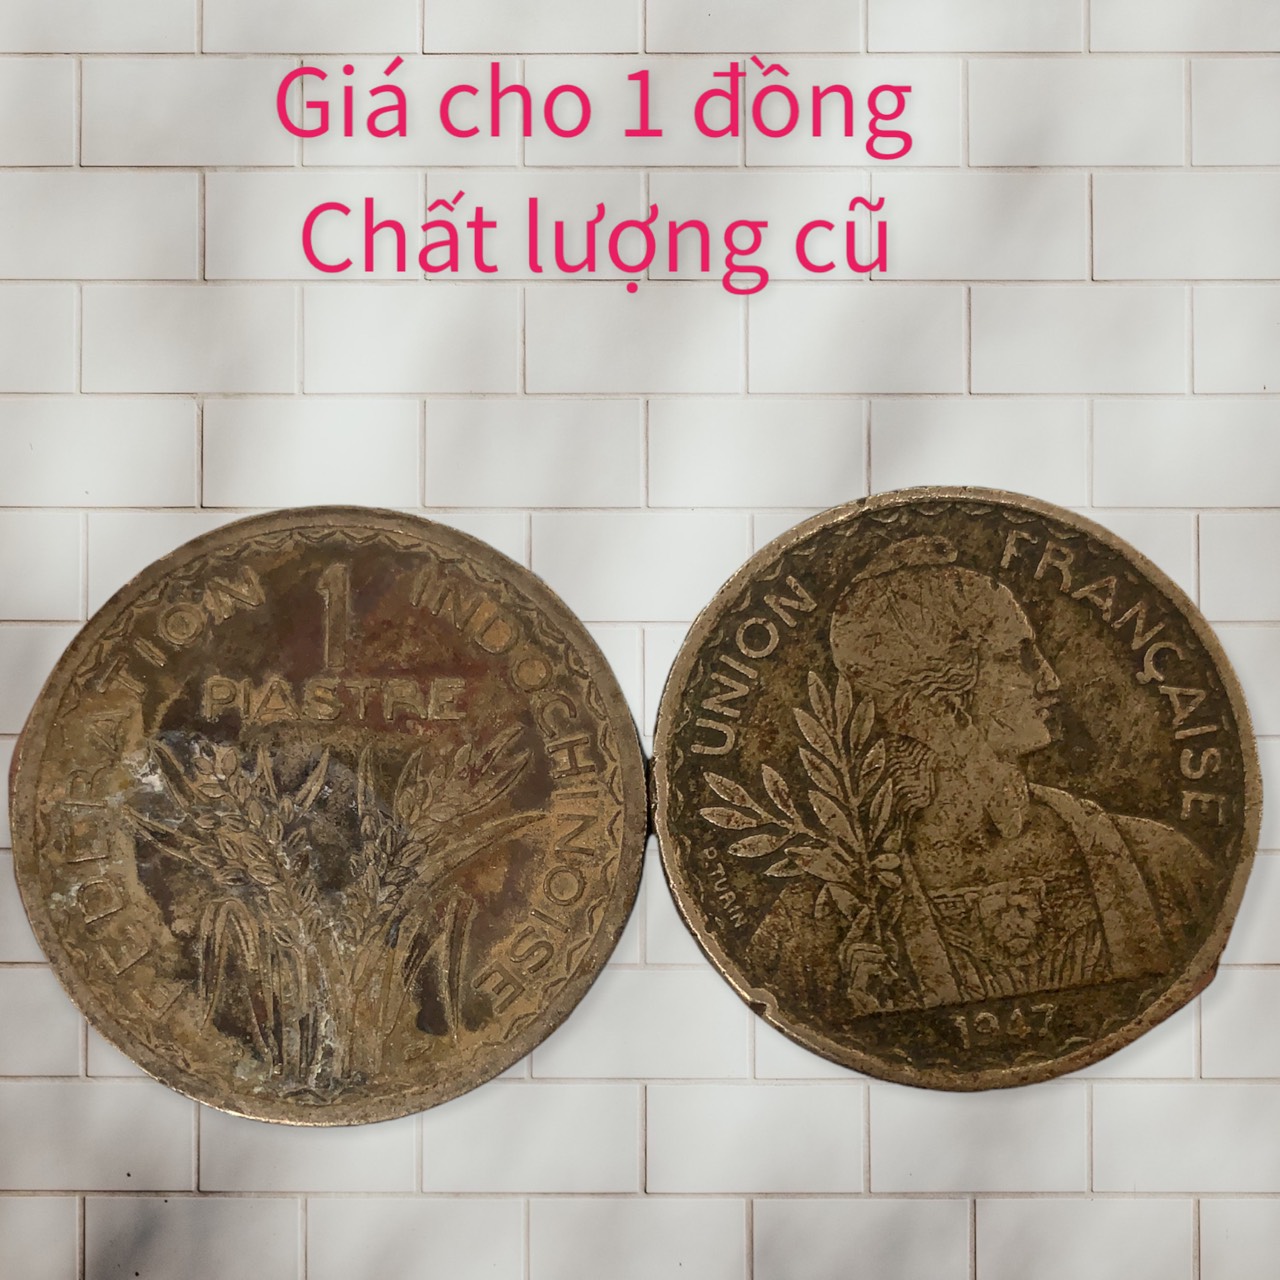 [Chất lượng cũ] Đồng Xu cổ xưa thời Đông Dương 1 piastre 1946, 1947 do shop tự chụp